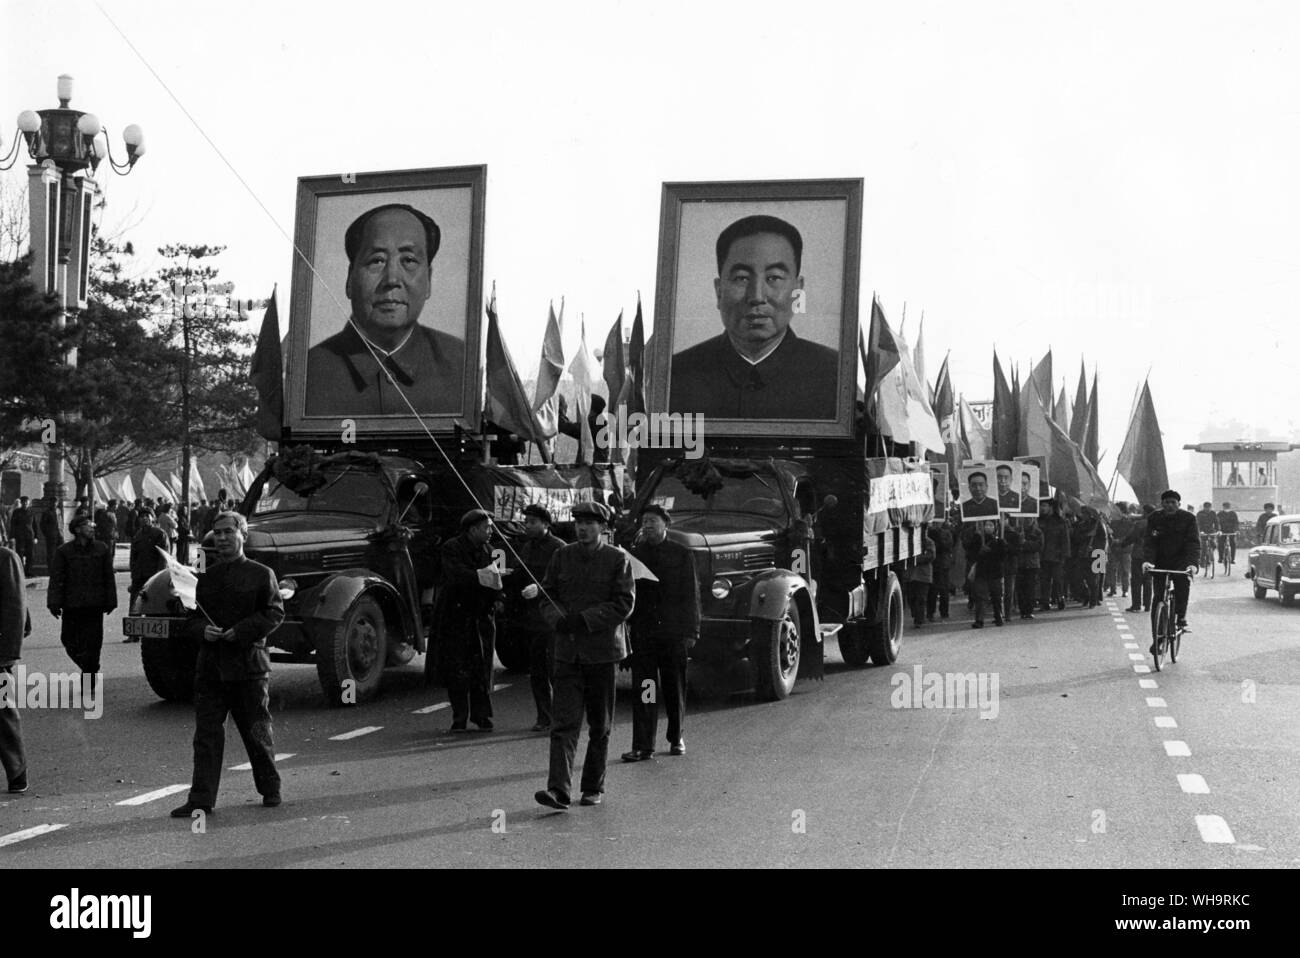 6 mars 1978 : la Chine, Pékin. Portraits de le Président nouvellement élu, Hua Kuo-feng et Mao Tse-Tung, lors d'une parade festive en l'honneur de la clôture du 5e Congrès du Parti National du Peuple. Sur l'Avenue Chang, Pékin. Banque D'Images